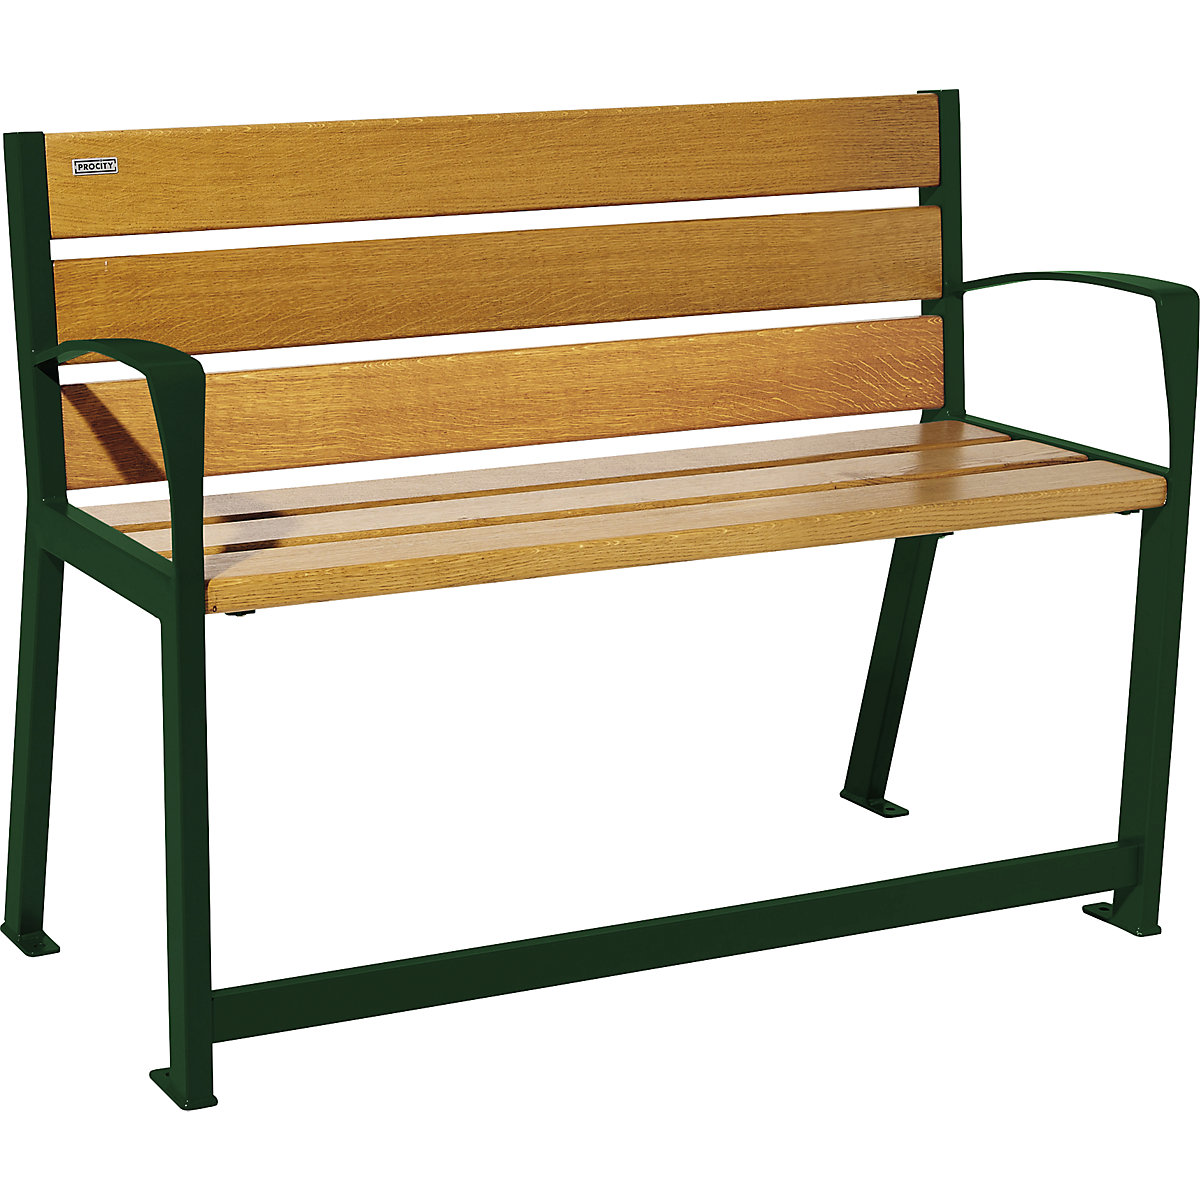 SILAOS® bench made of wood – PROCITY